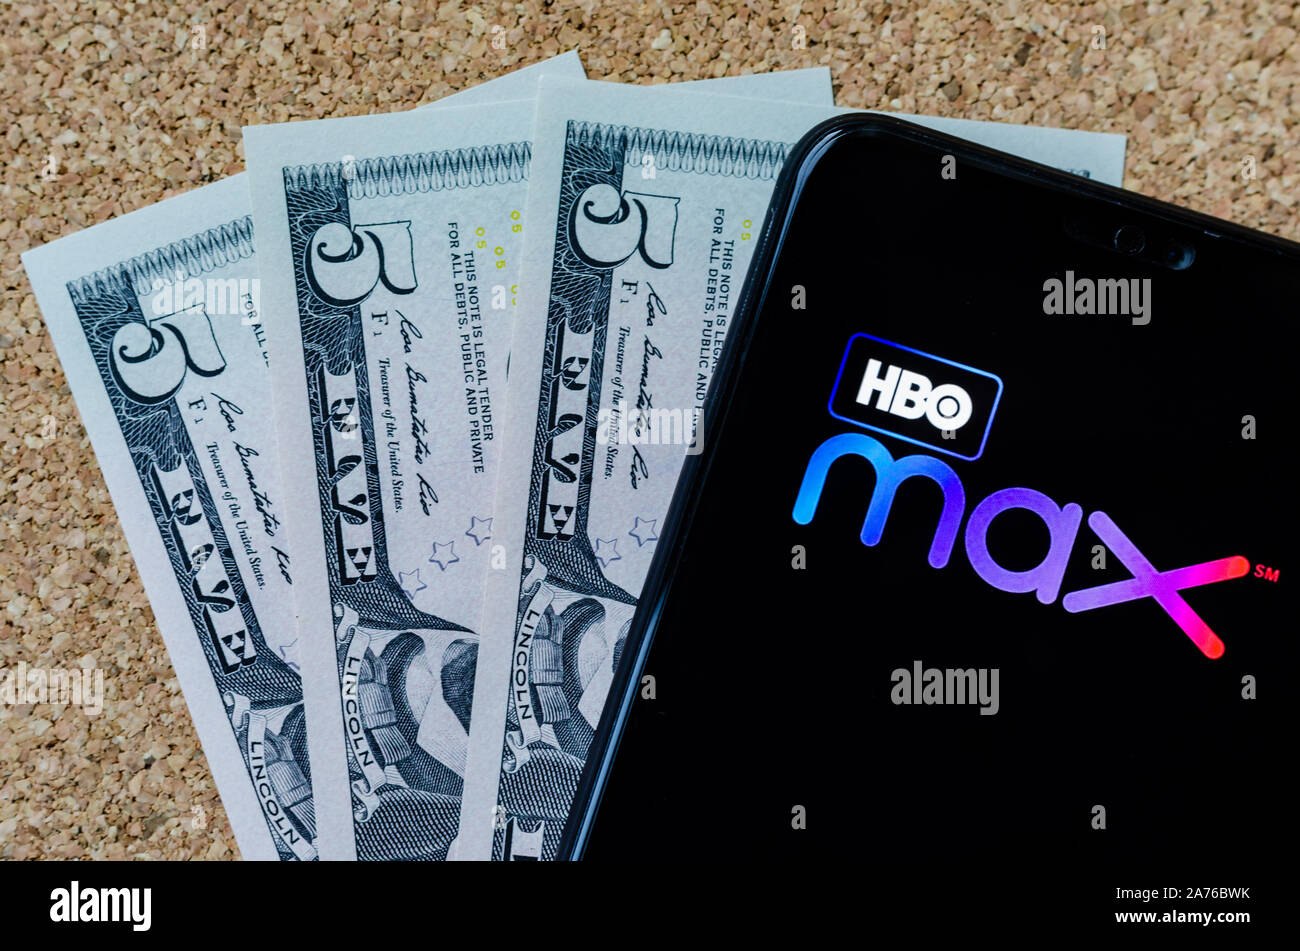 HBO max logotipo en un smartphone y 15 dólares EE.UU. junto a él, que es honorario mensual para un nuevo servicio de streaming de vídeo. Foto de stock